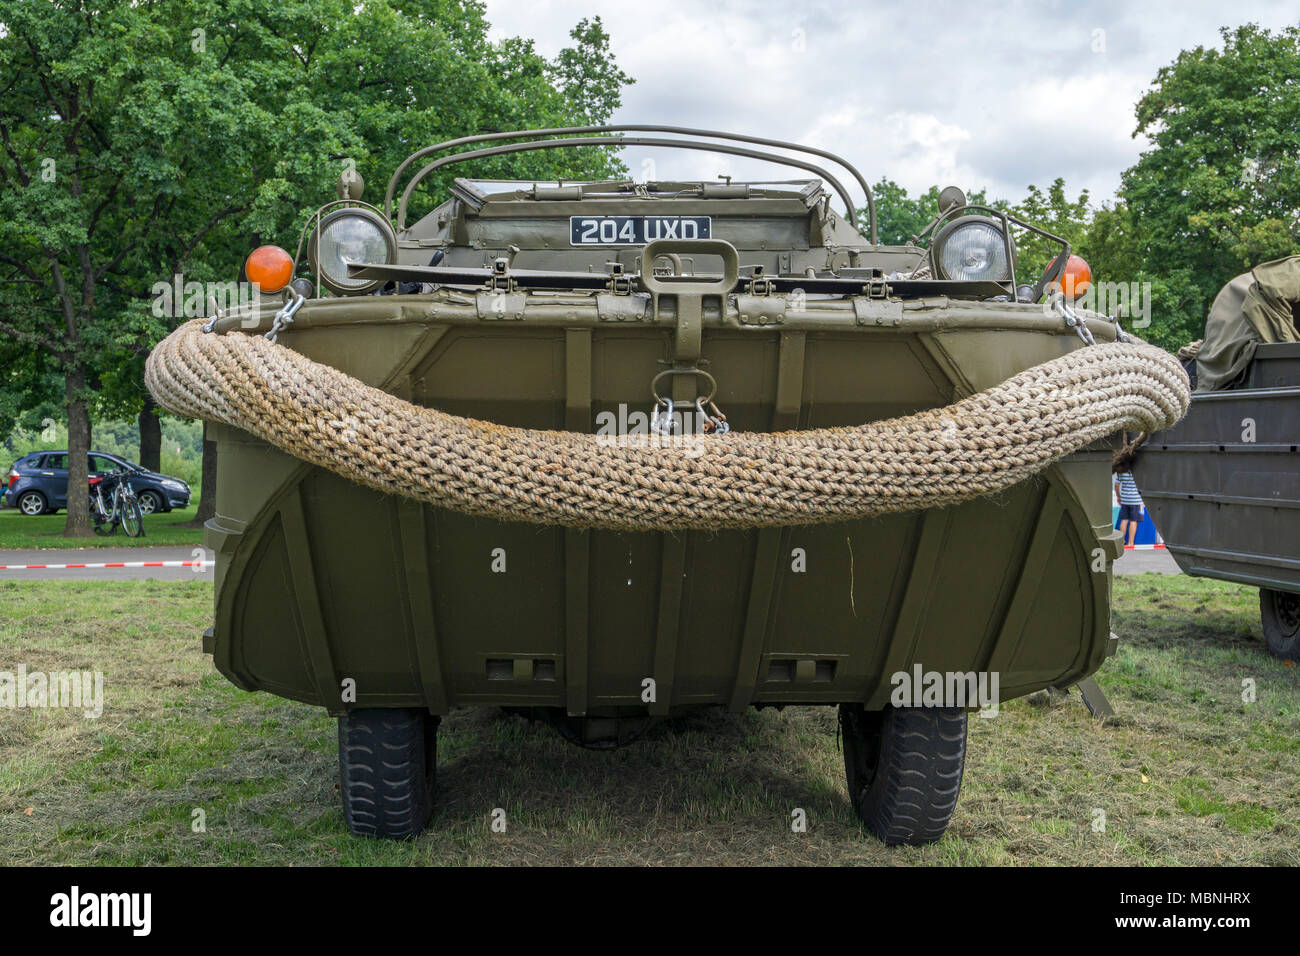 Militare veicolo anfibio a Mosella, Neumagen-Dhron, Renania-Palatinato, Germania Foto Stock